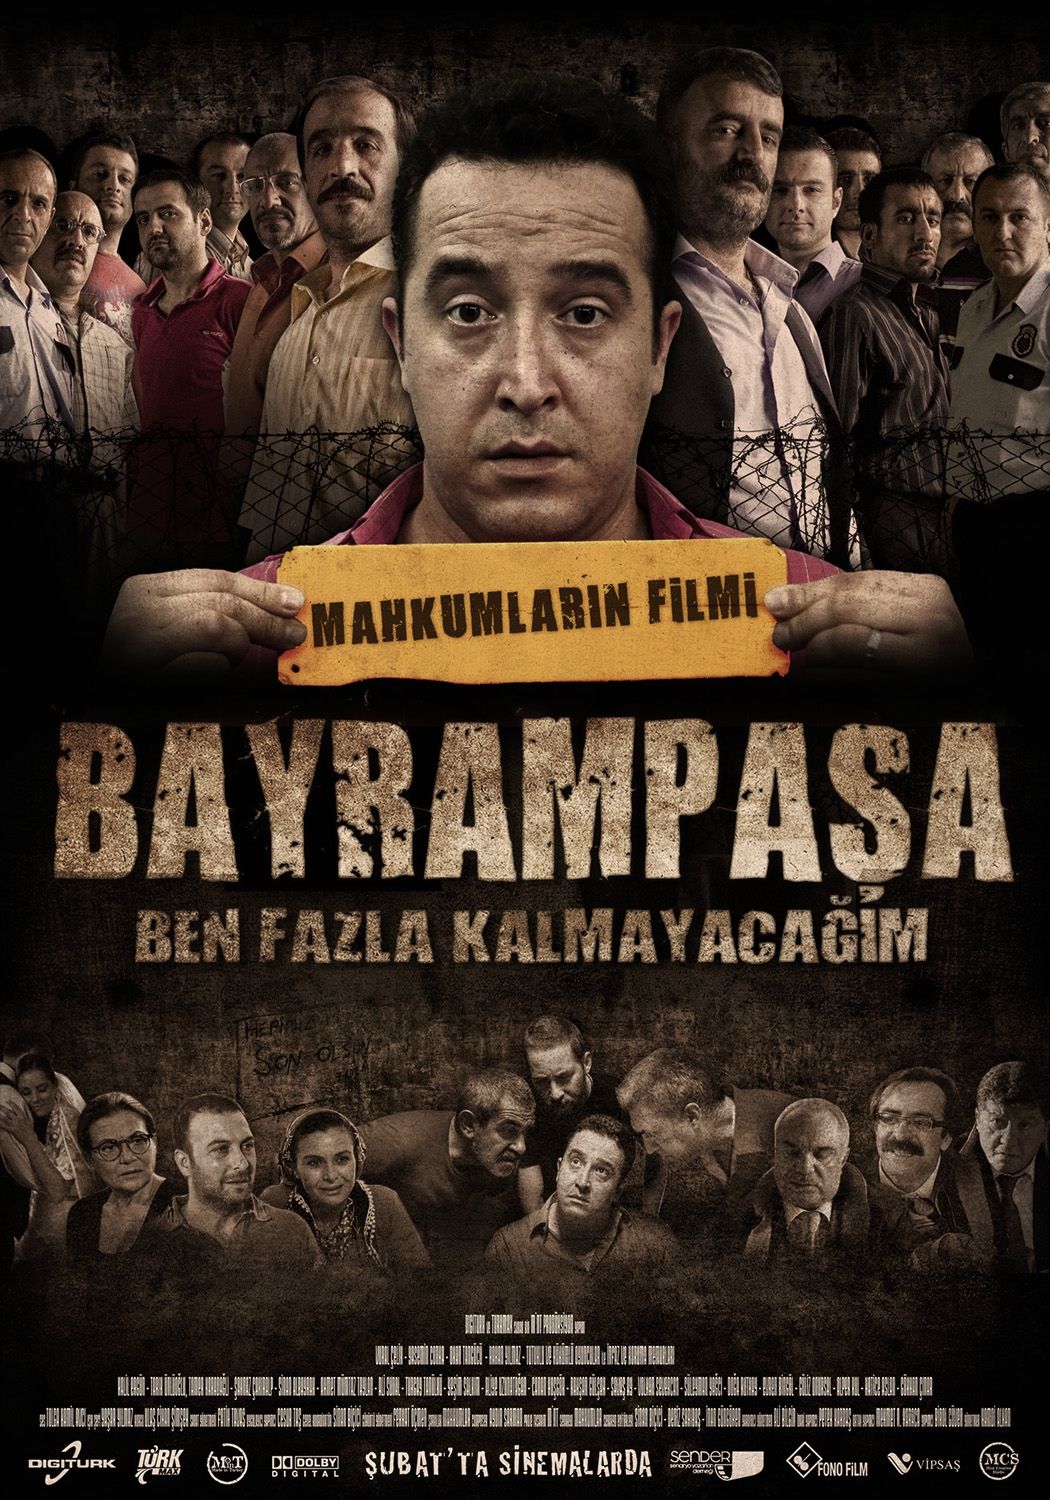 Extra Large Movie Poster Image for Bayrampasa: Ben fazla kalmayacagim (#2 of 7)